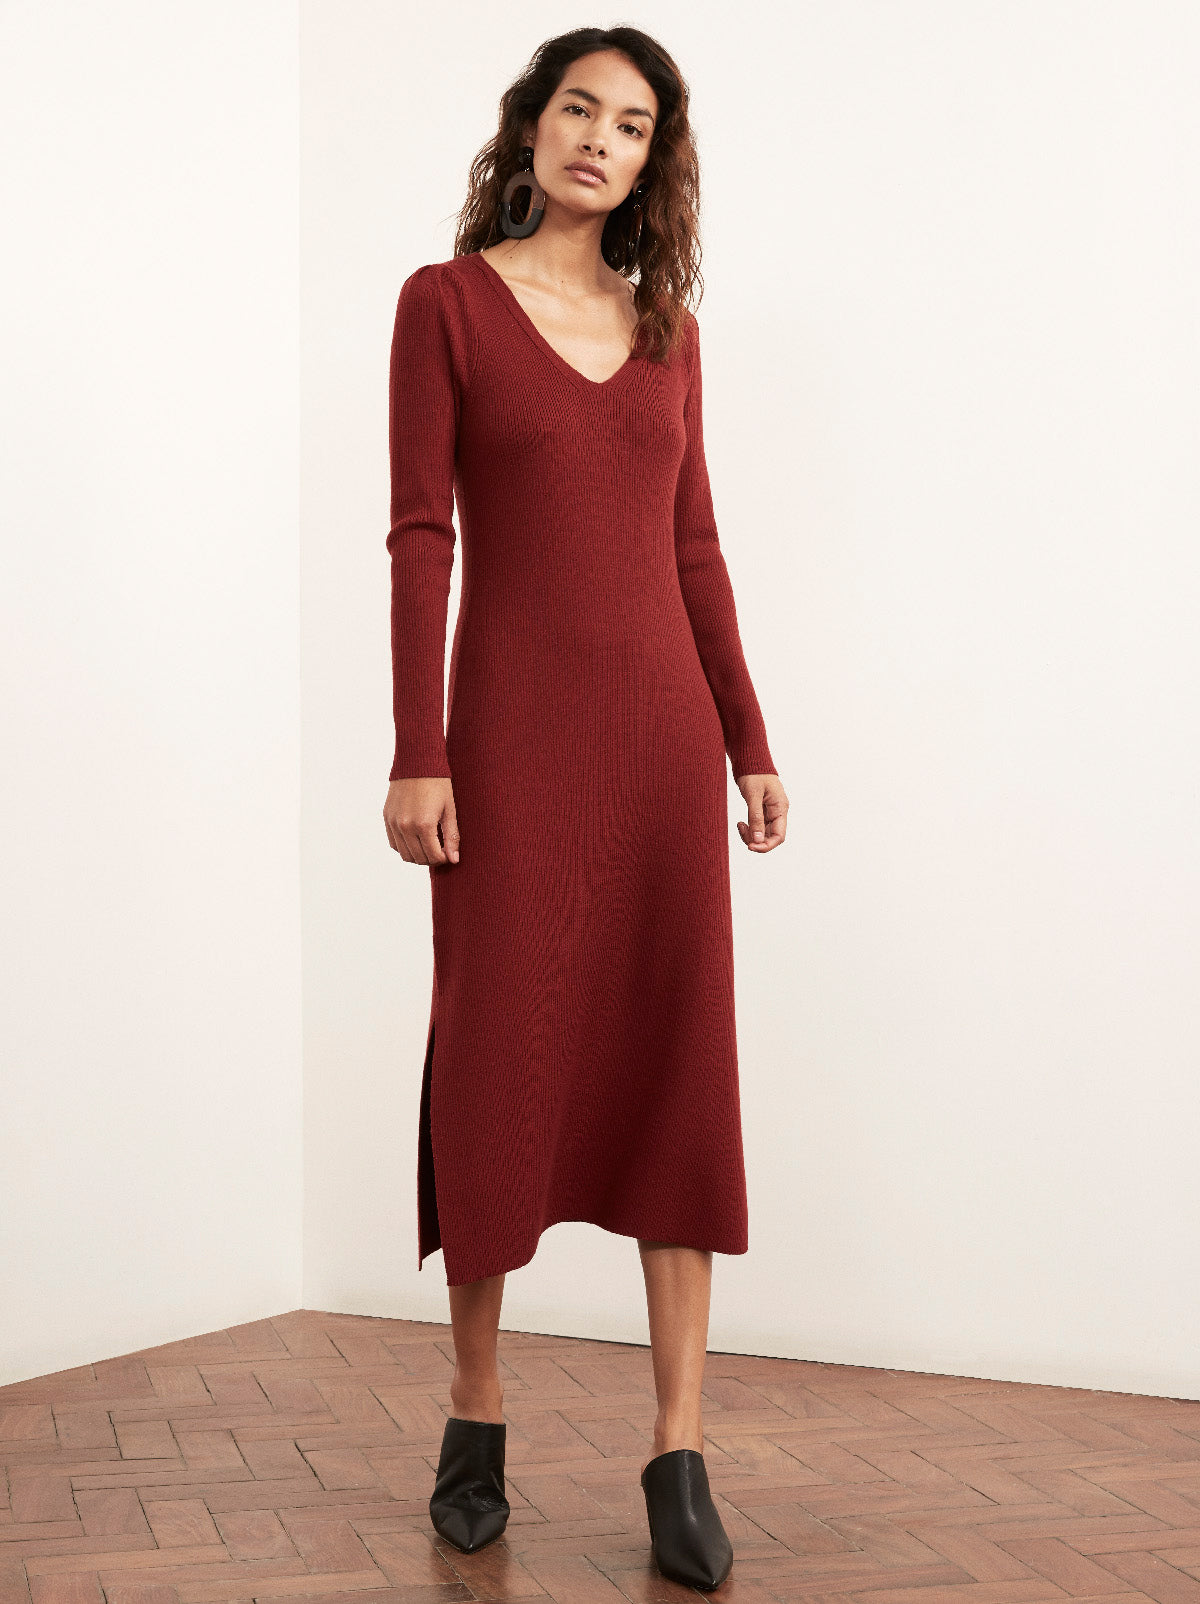 Elisa Red Merino V-neck Wool Rib Knit Dress | Women's Knitted Dresses ...